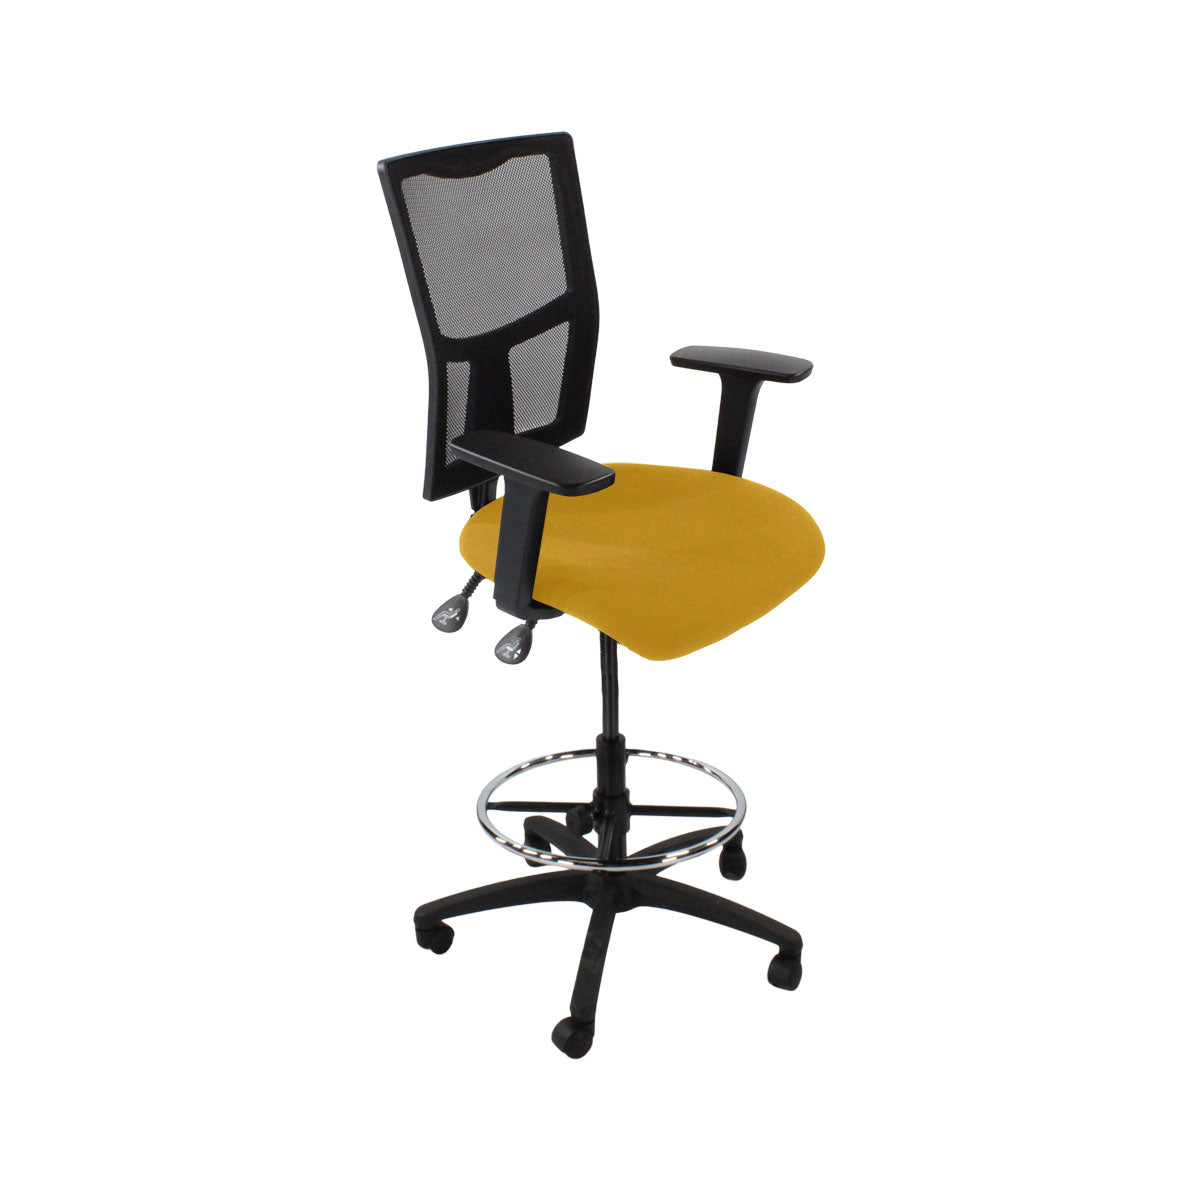 Inhaltsverzeichnis: Ergo 2 Draftsman Chair aus gelbem Stoff – generalüberholt